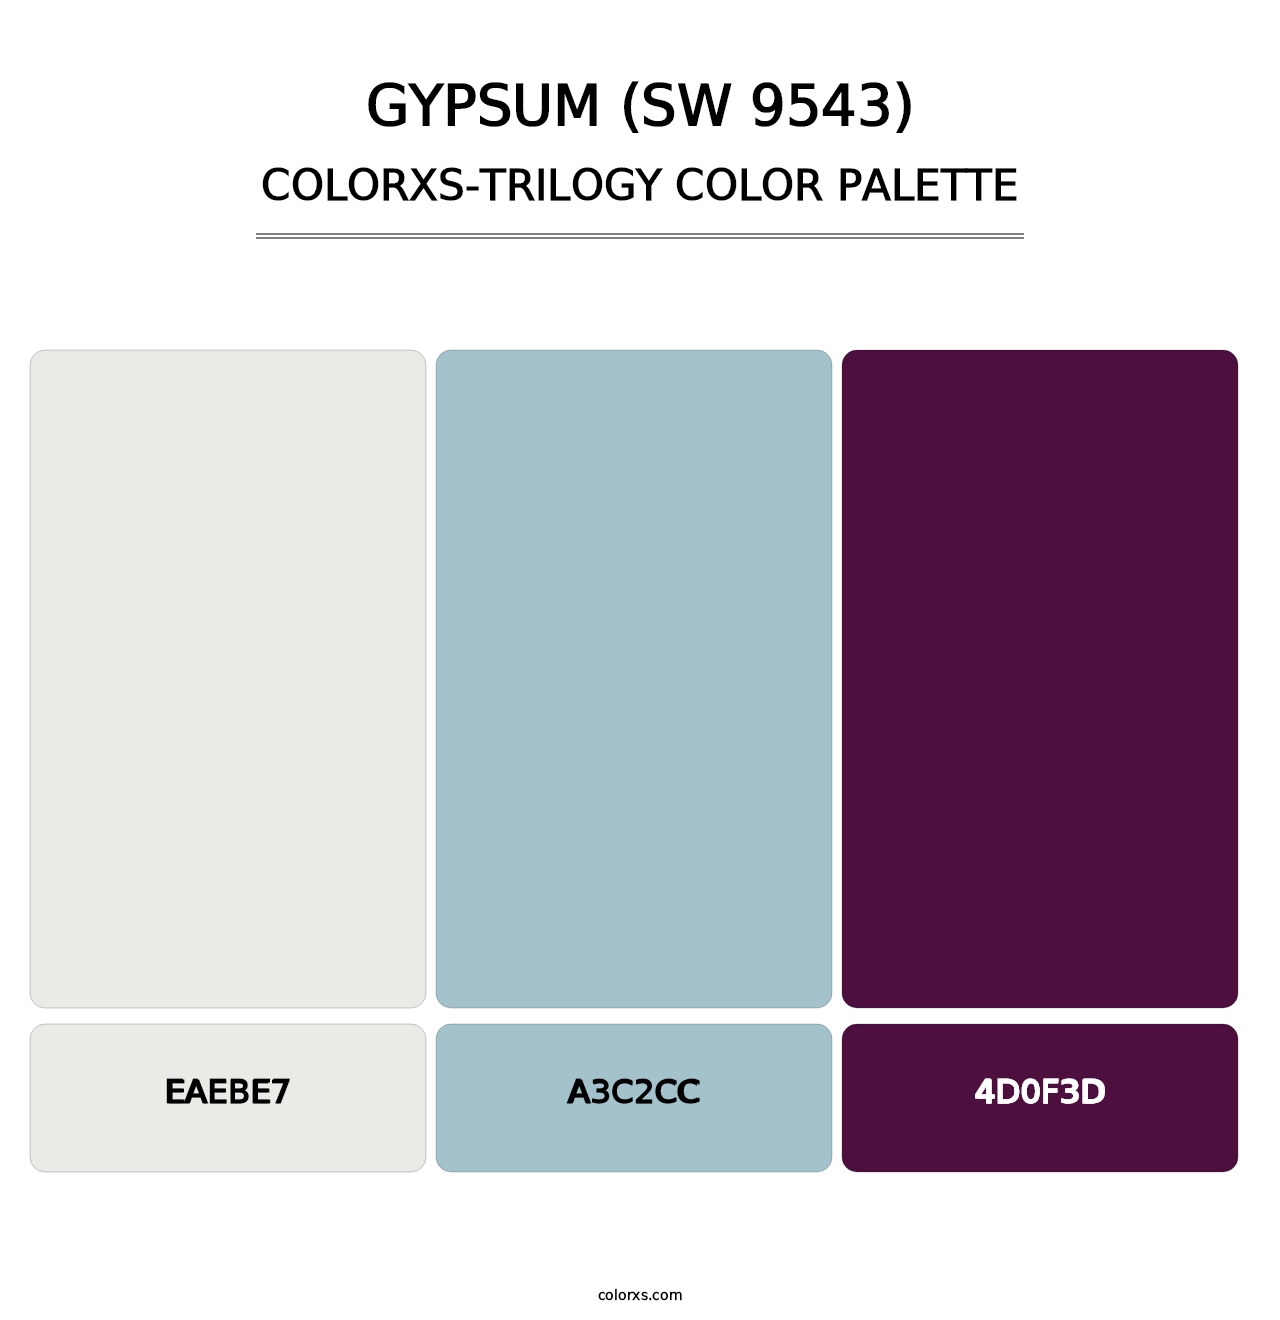 Gypsum (SW 9543) - Colorxs Trilogy Palette